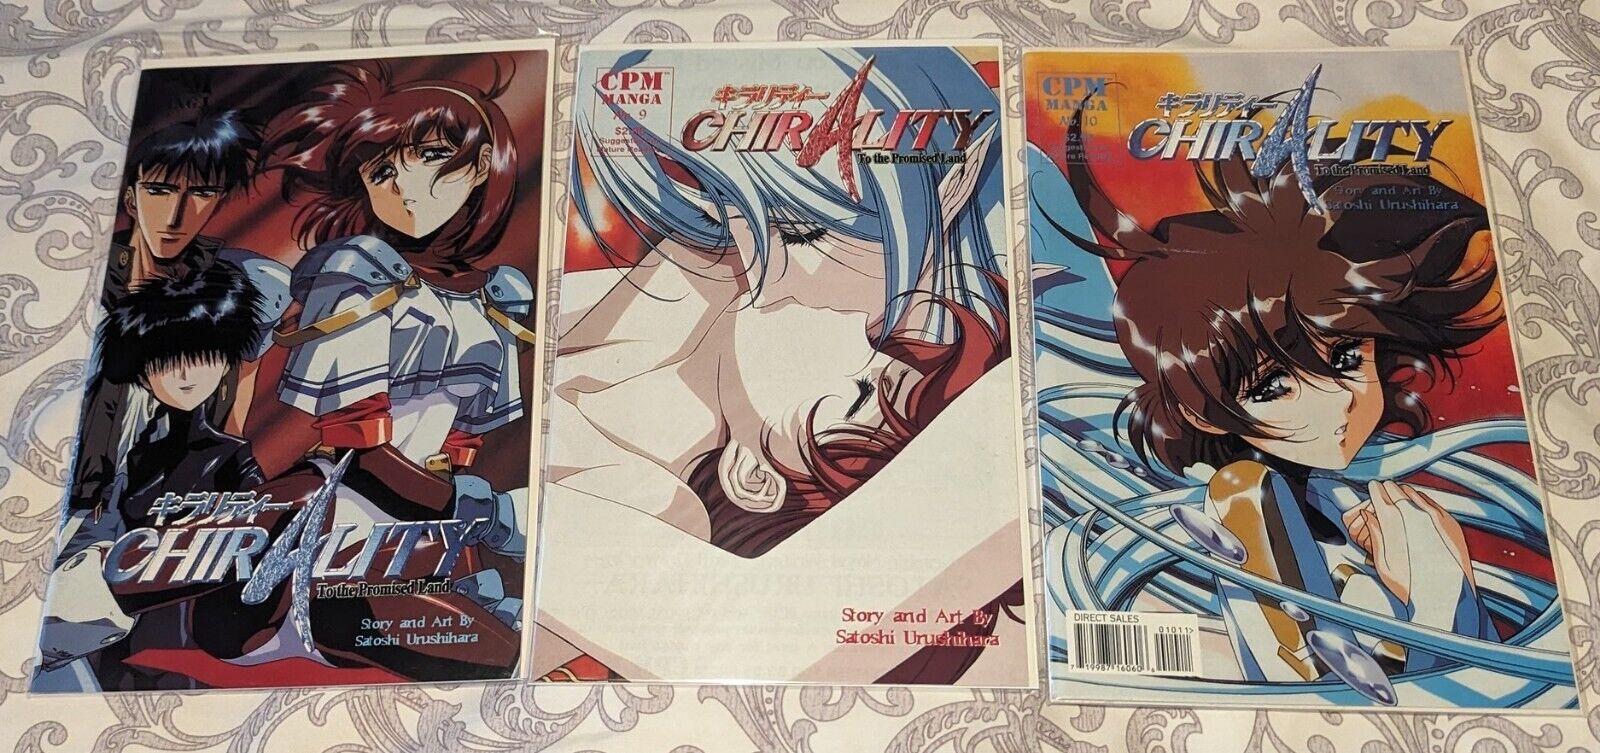 Lot of 9 Chirality comics # 5, 9-14, 16-17 CPM Manga, 1997, Satoshi Urushihara